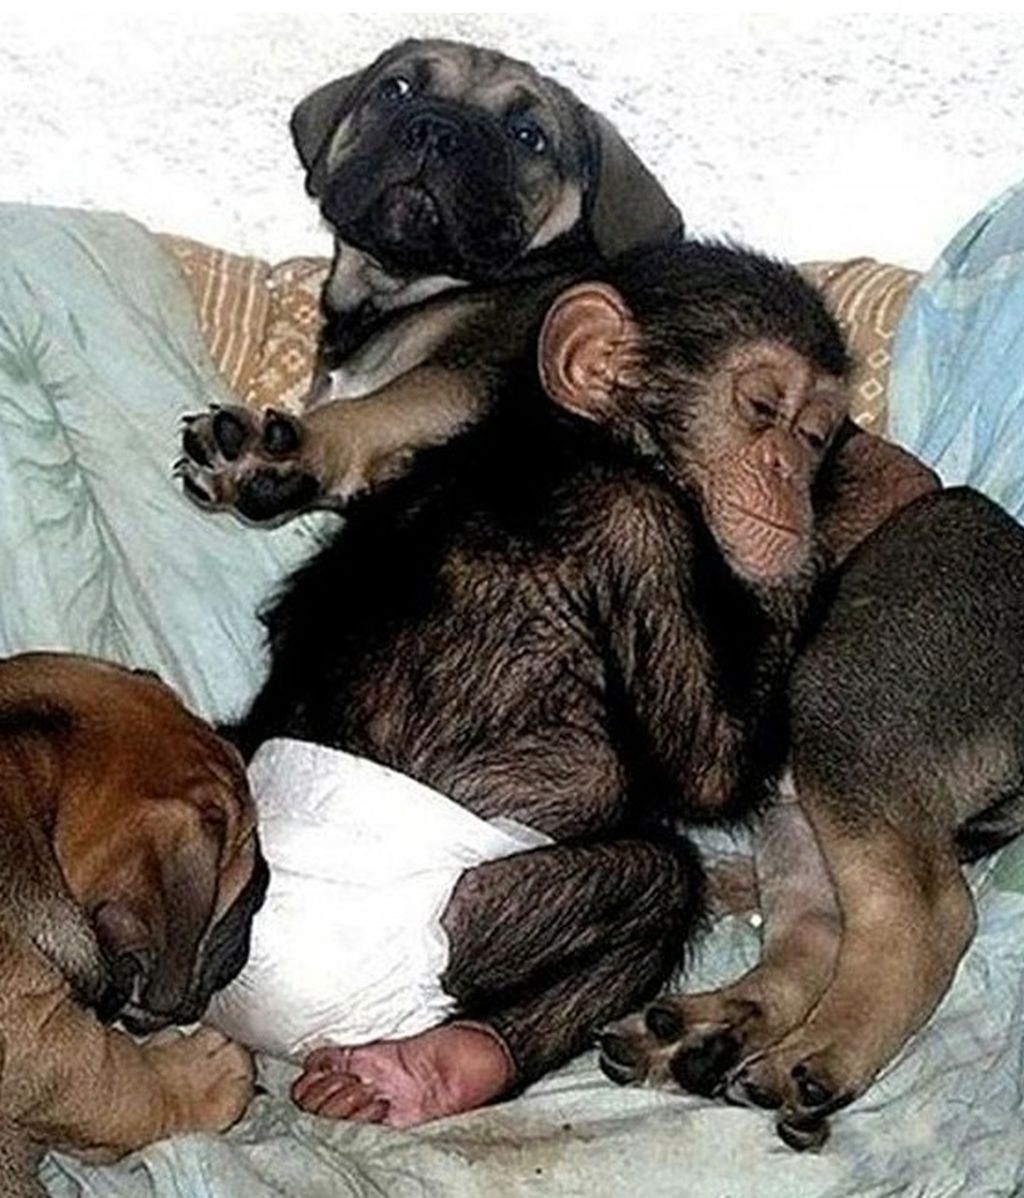 Un chimpancé bebé adoptado por una familia de perros